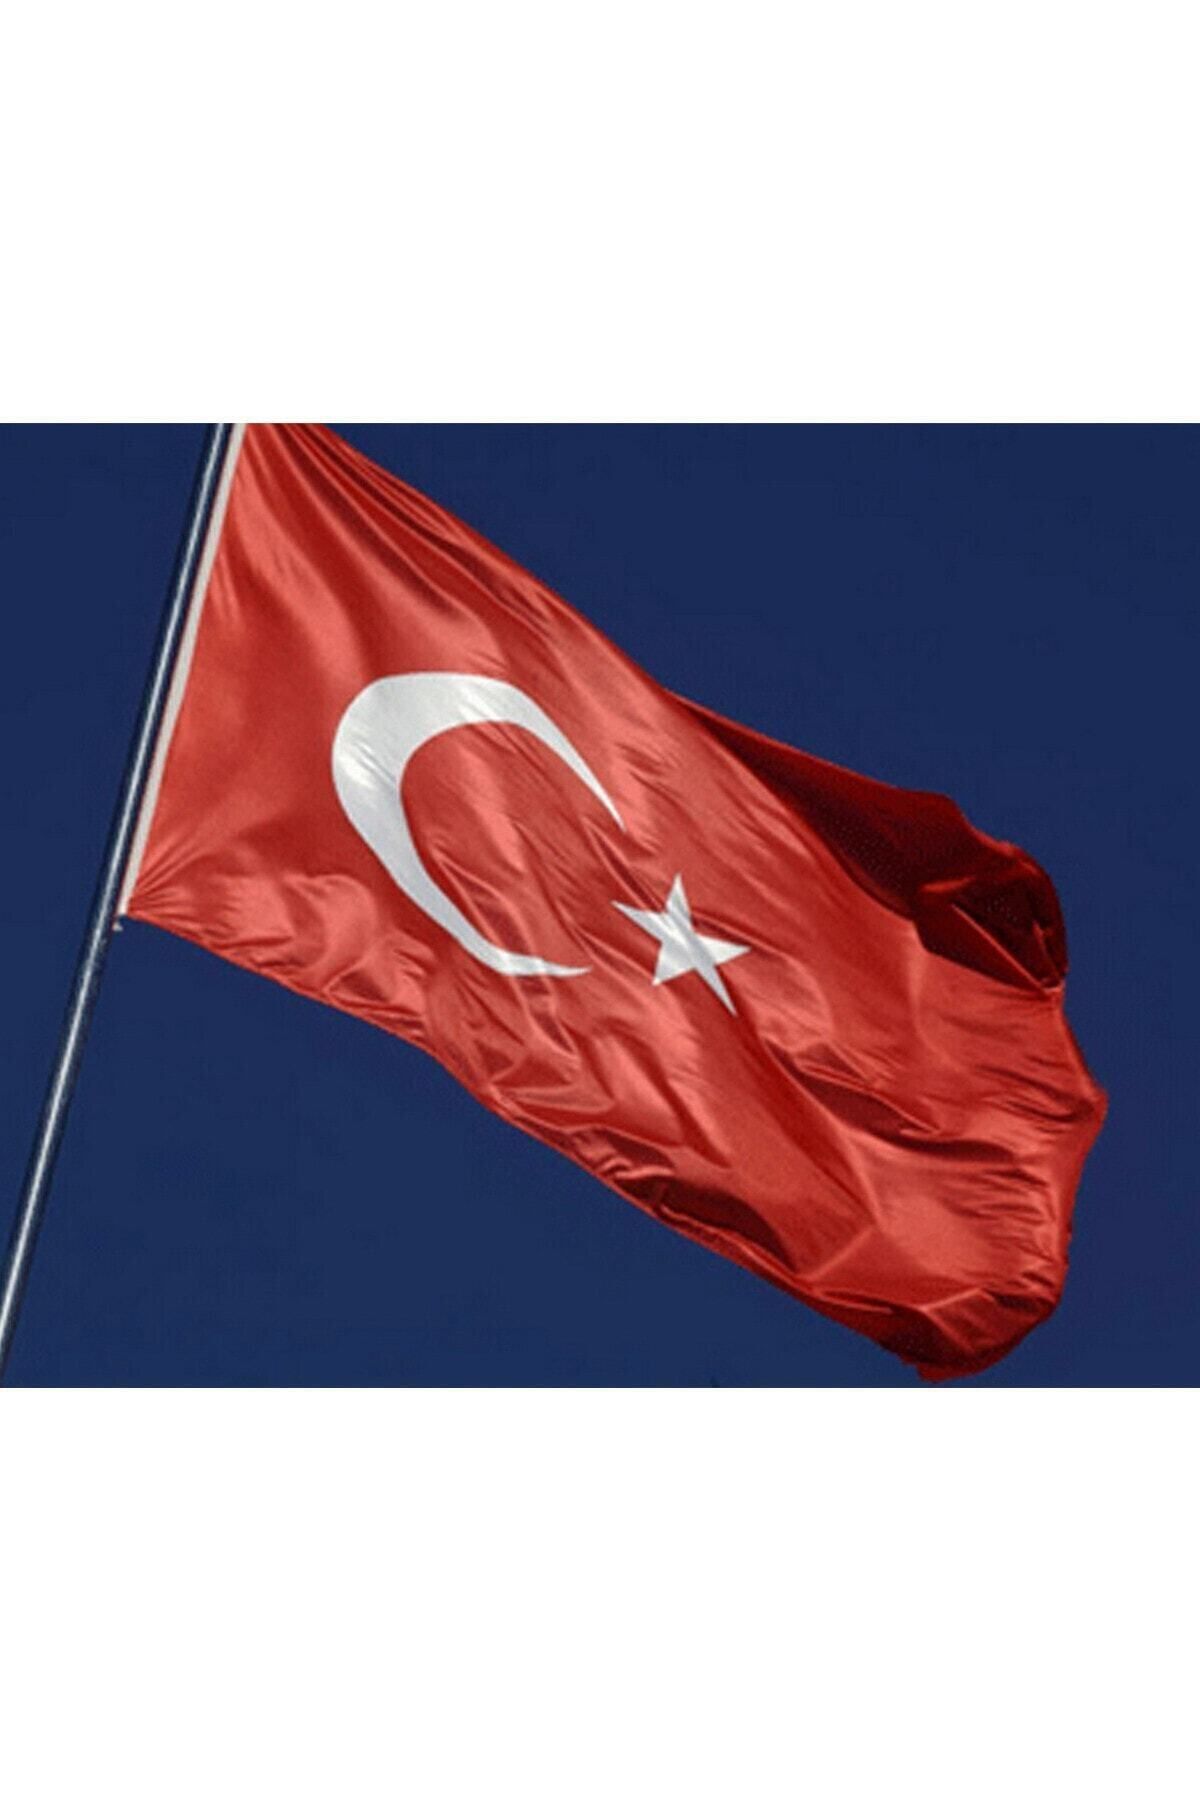 Buket Türk Bayrağı 300x450 Cm Özel Raşel Kumaş Bayrak (BKT-127)